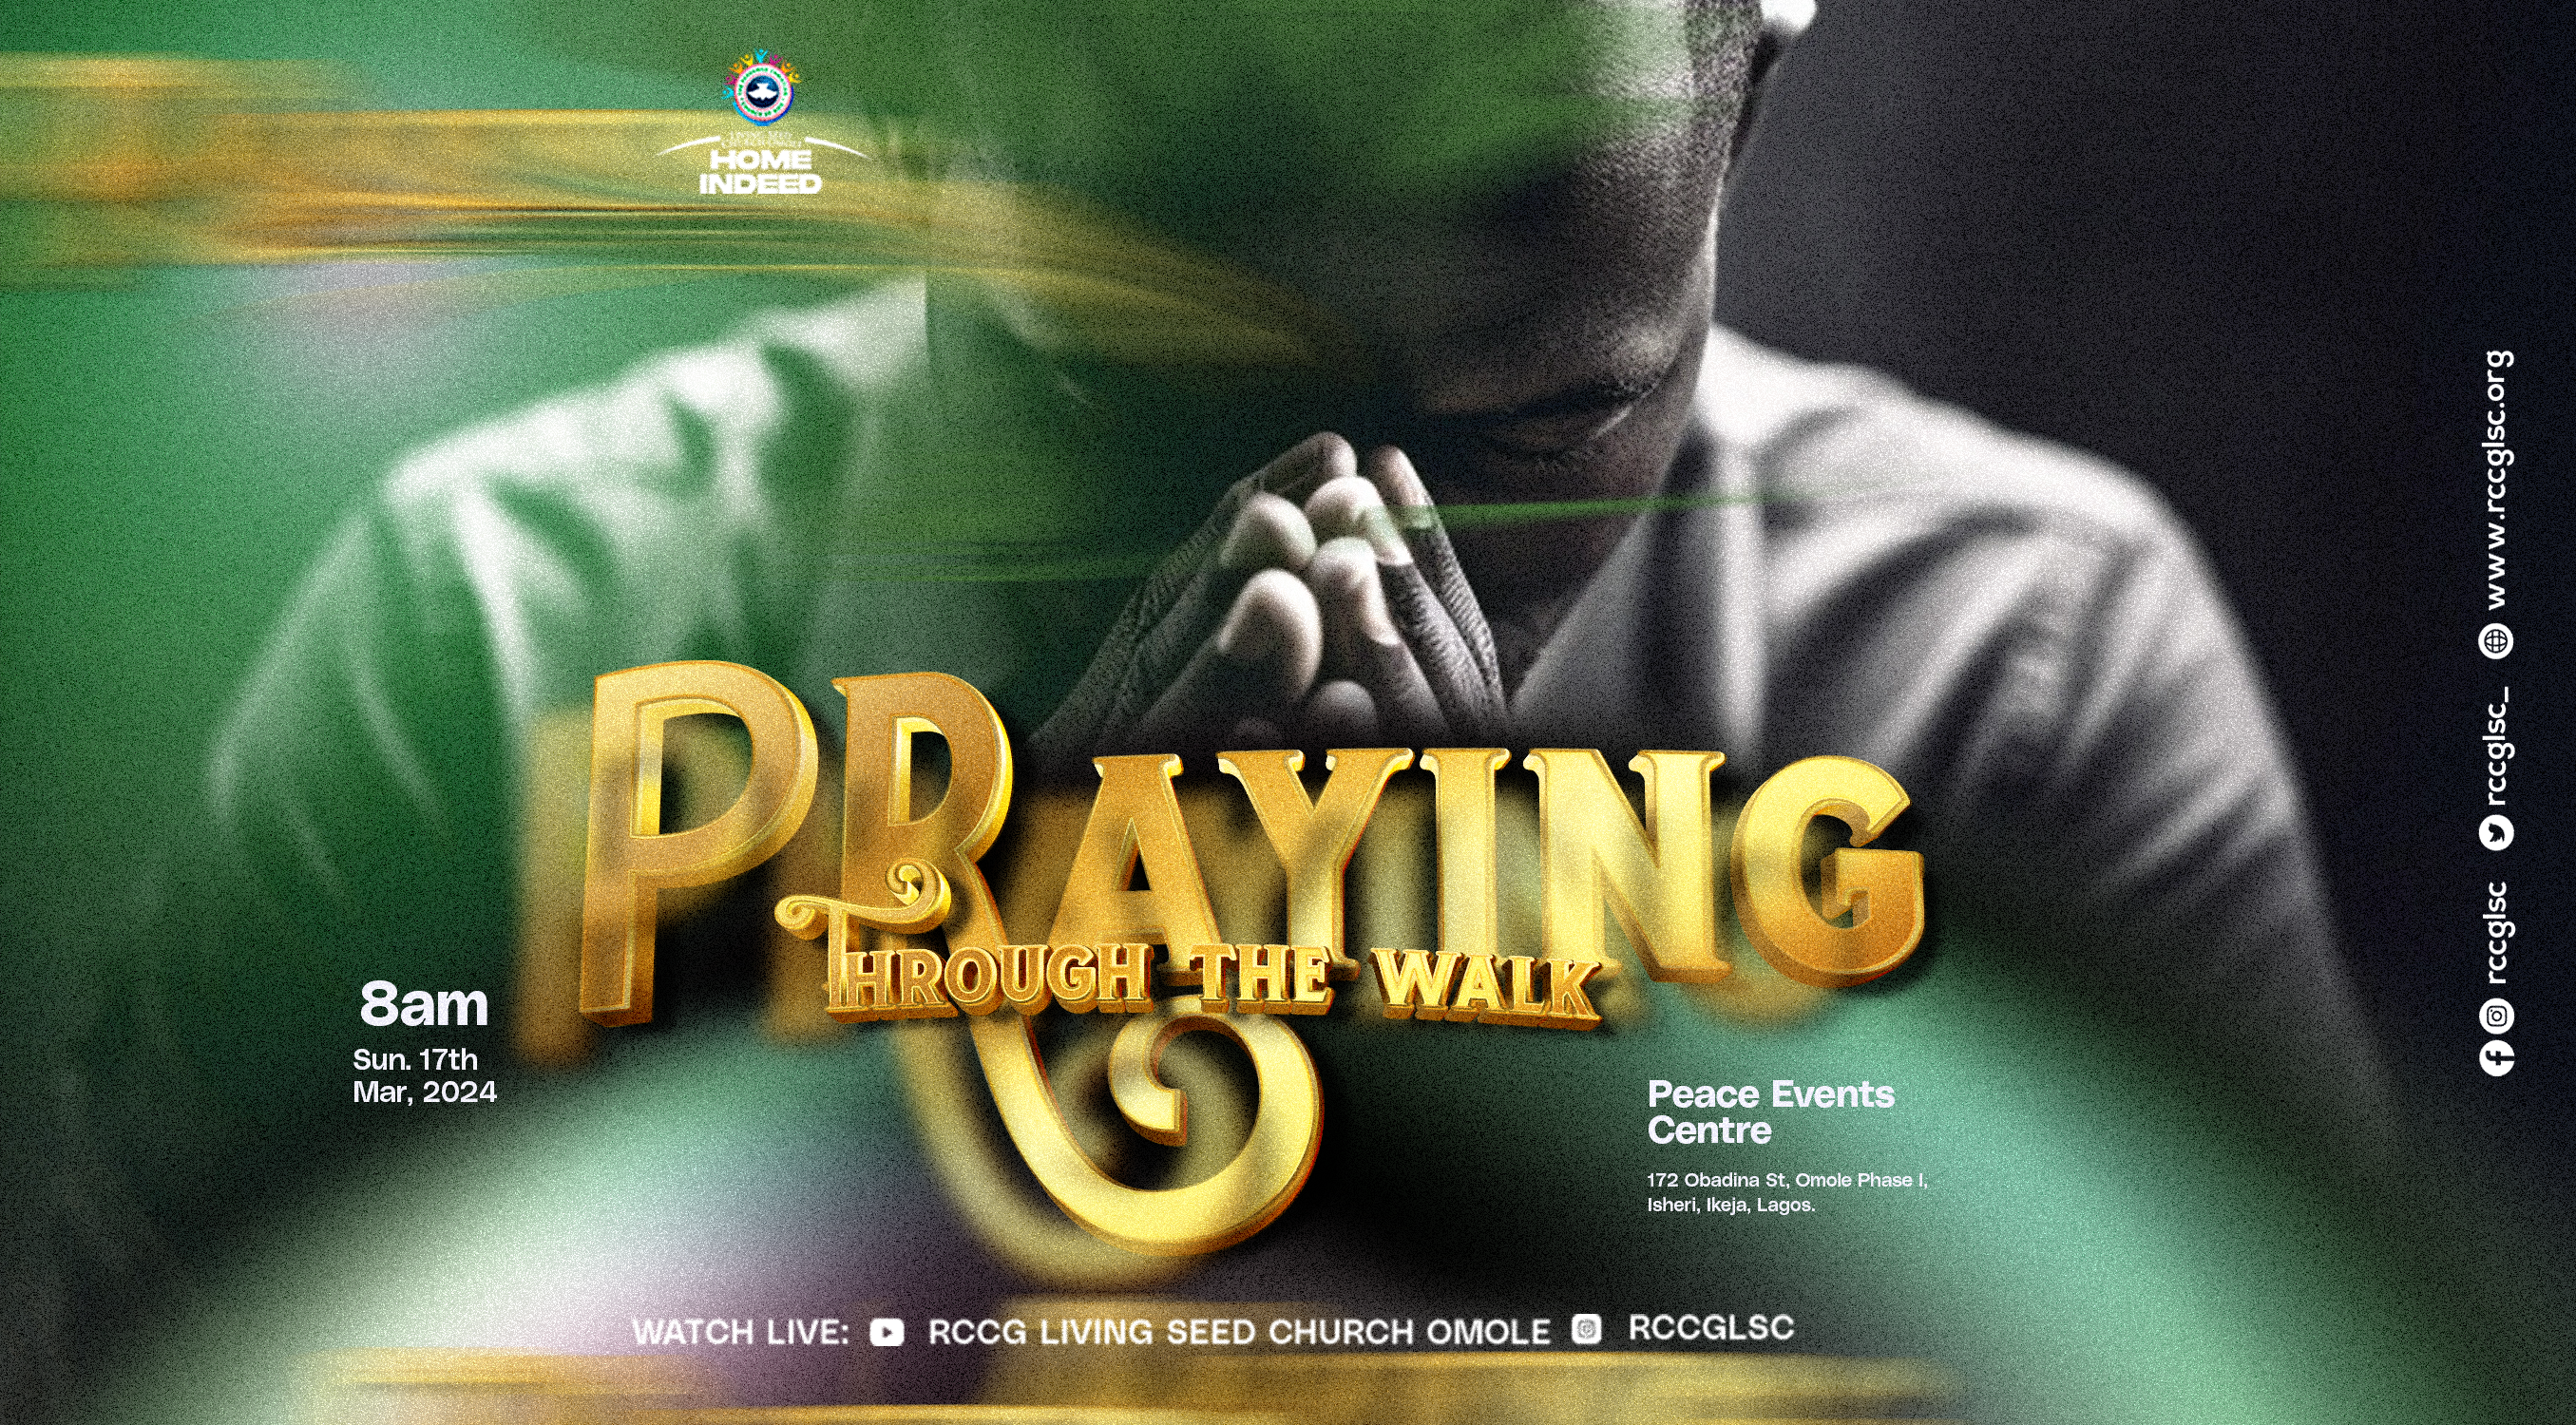 PRAYING THROUGH THE WALK